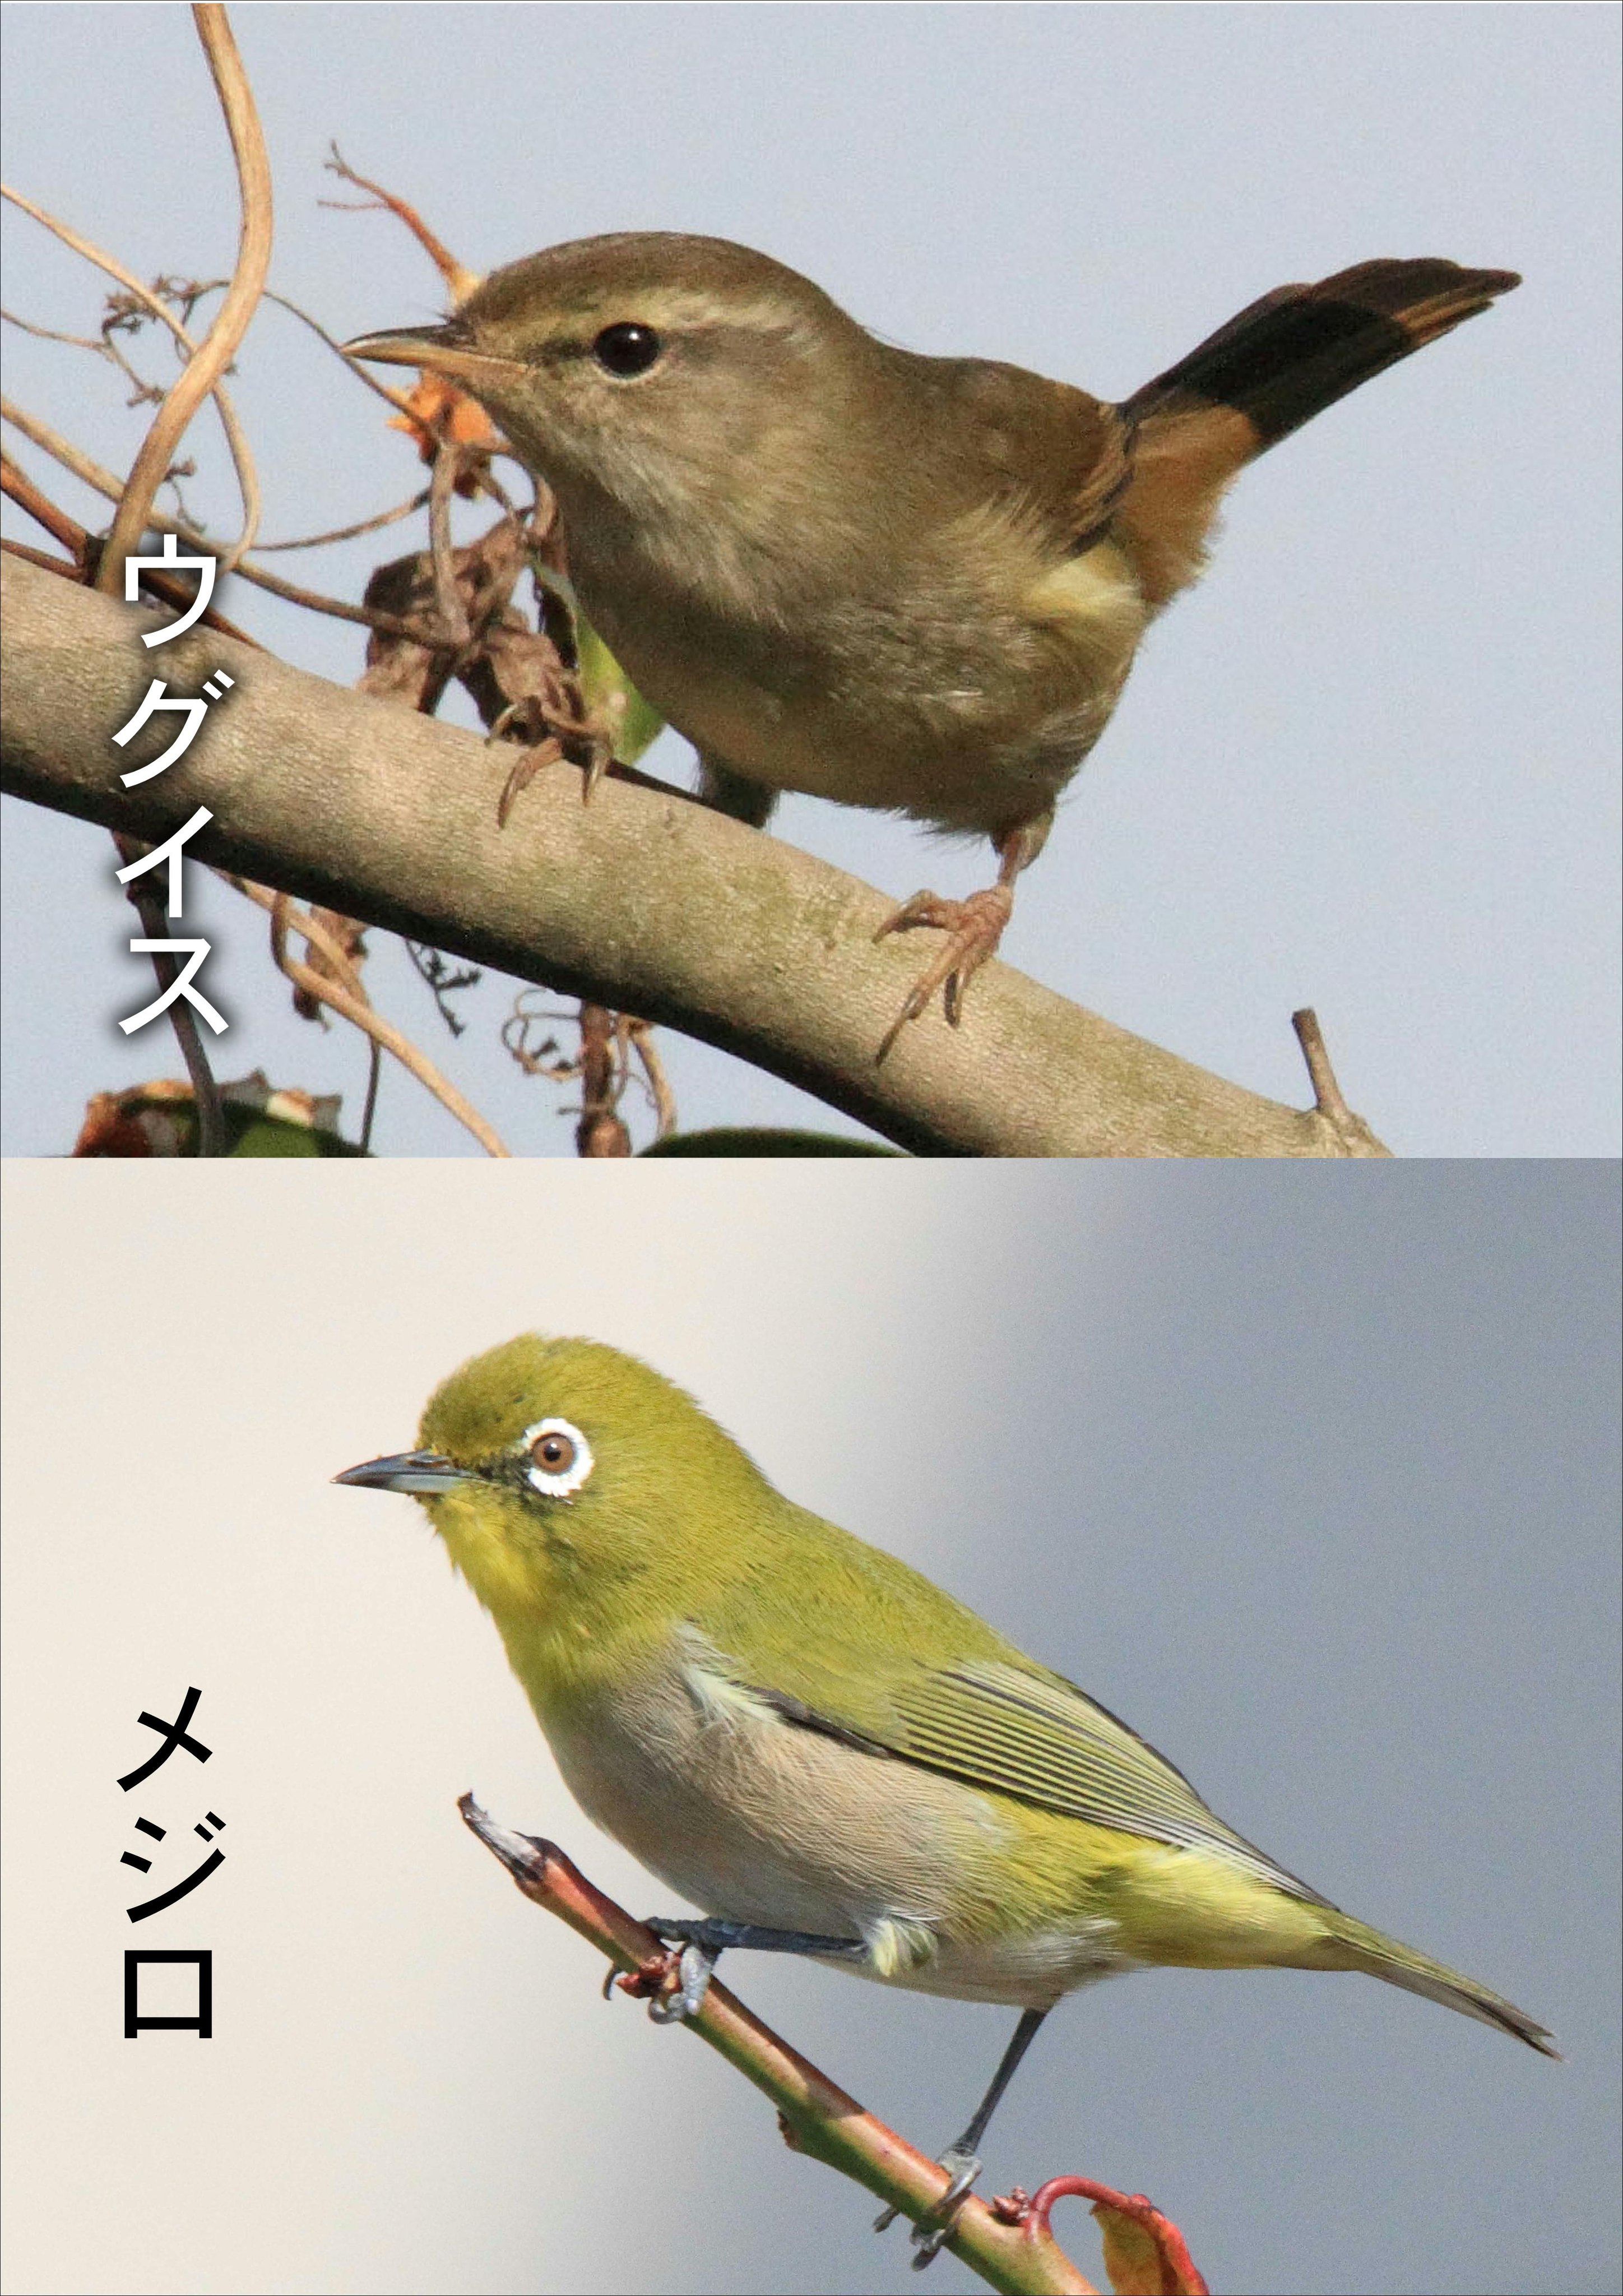 片柳弘史 En Twitter この季節 梅の枝にとまった明るい緑色の鳥を見てウグイスと思っておられる方が多いようですが 実はその鳥はメジロです メジロの方が ウグイス色 なので まぎらわしいですね O T Co Gwil2nu7za Twitter